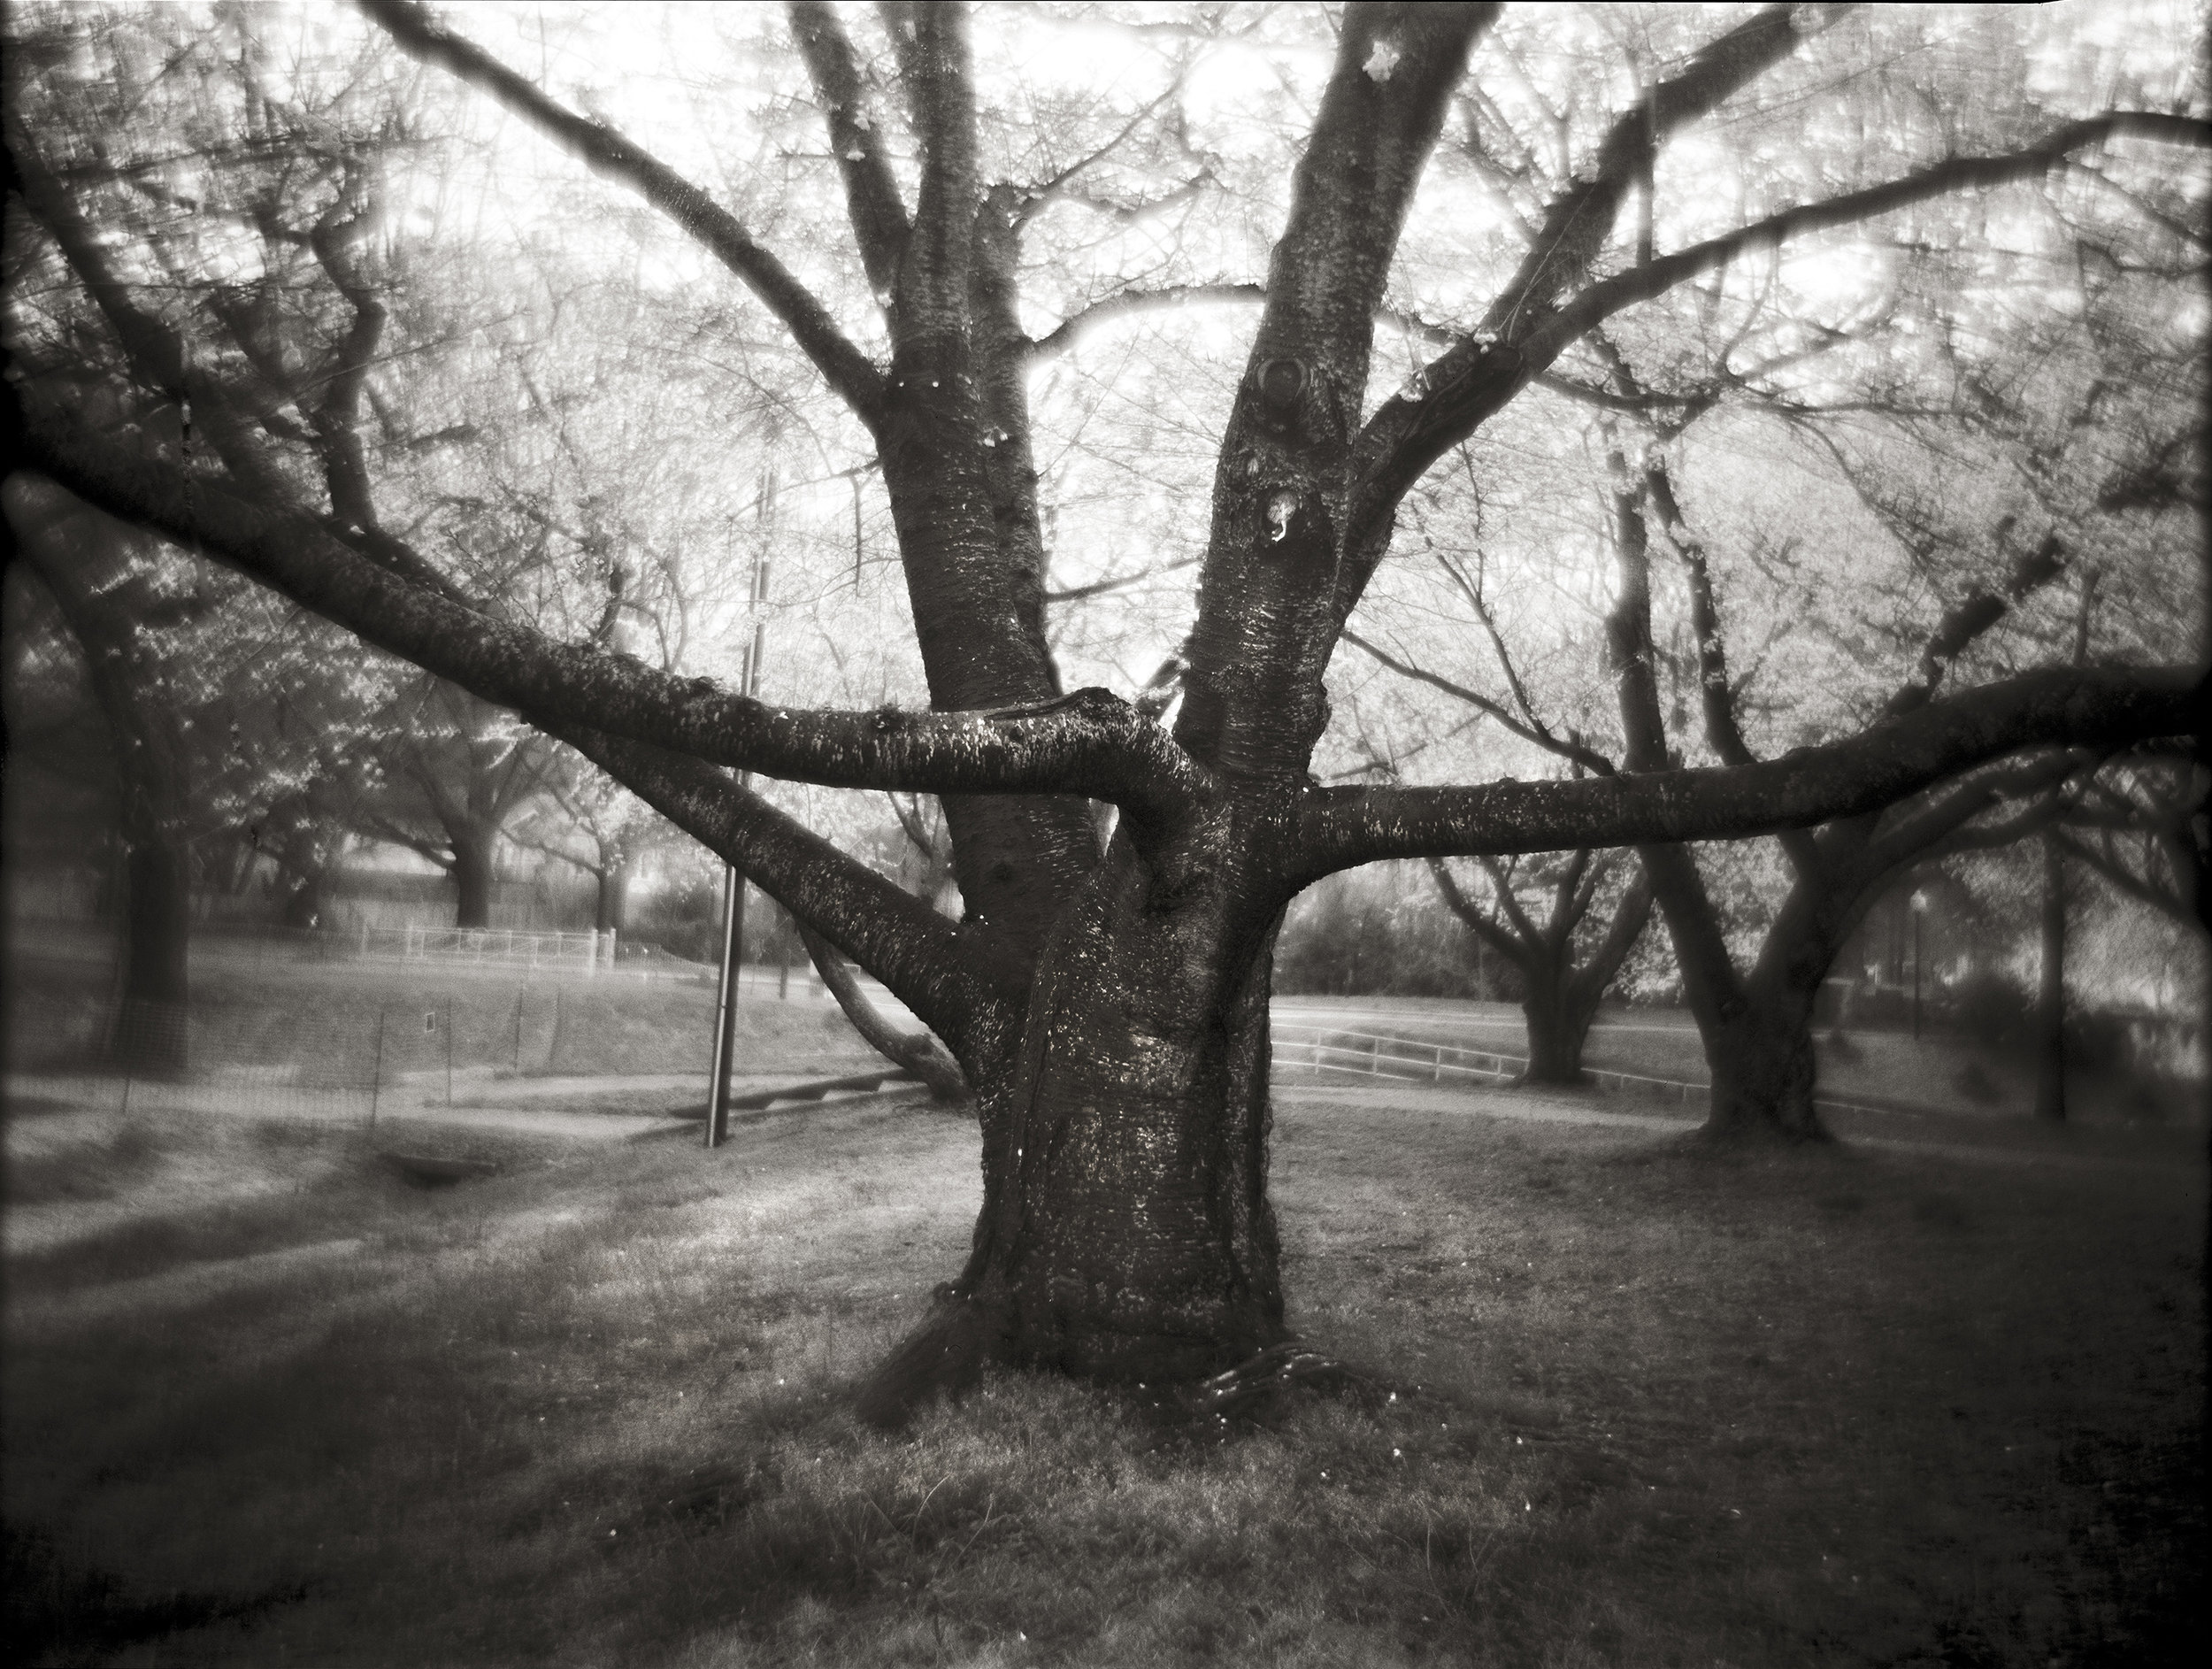  OLD CHERRY TREE, 2003 